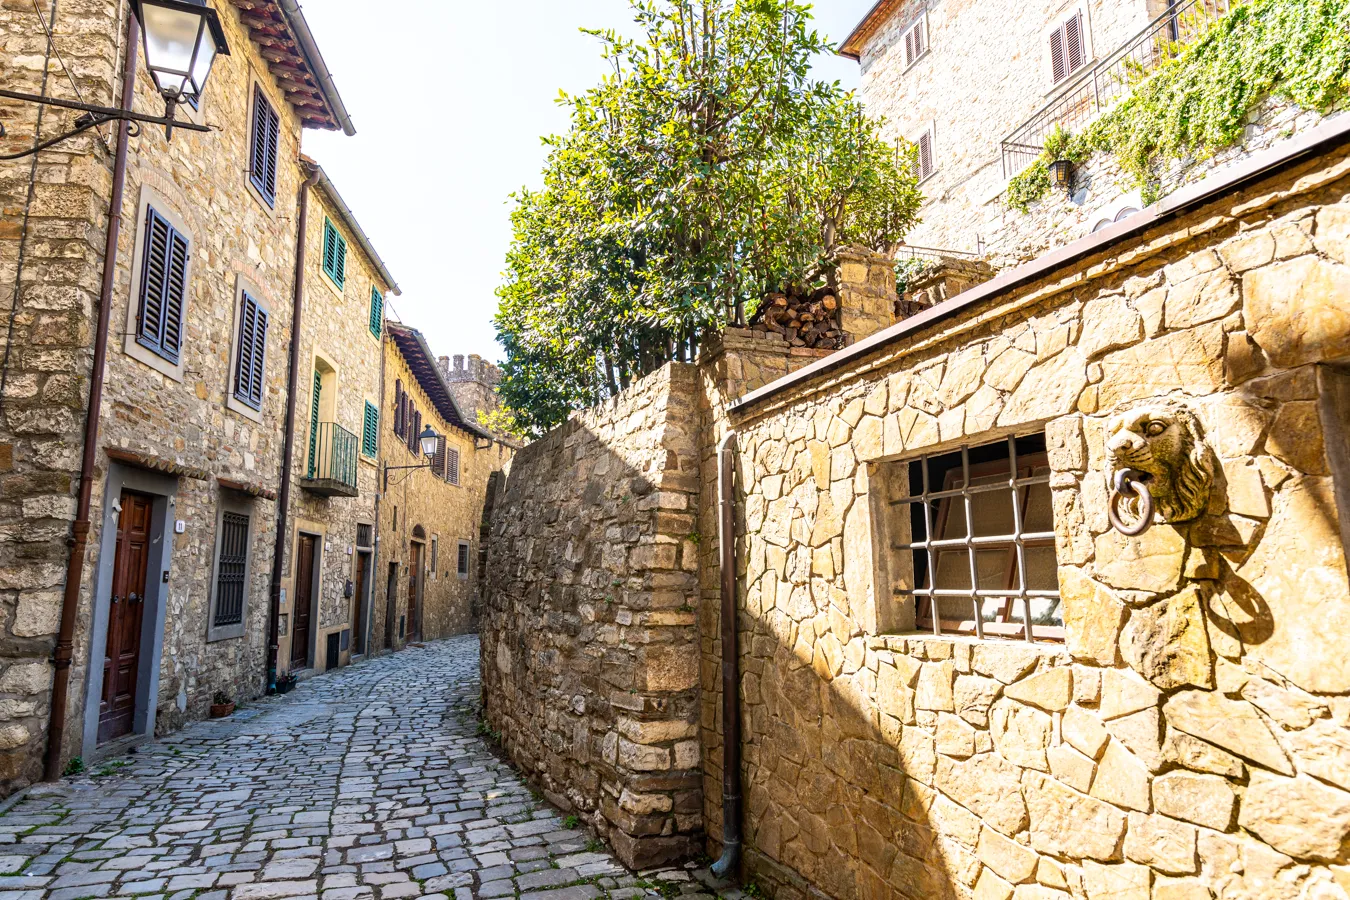 stone street in tuscany italy